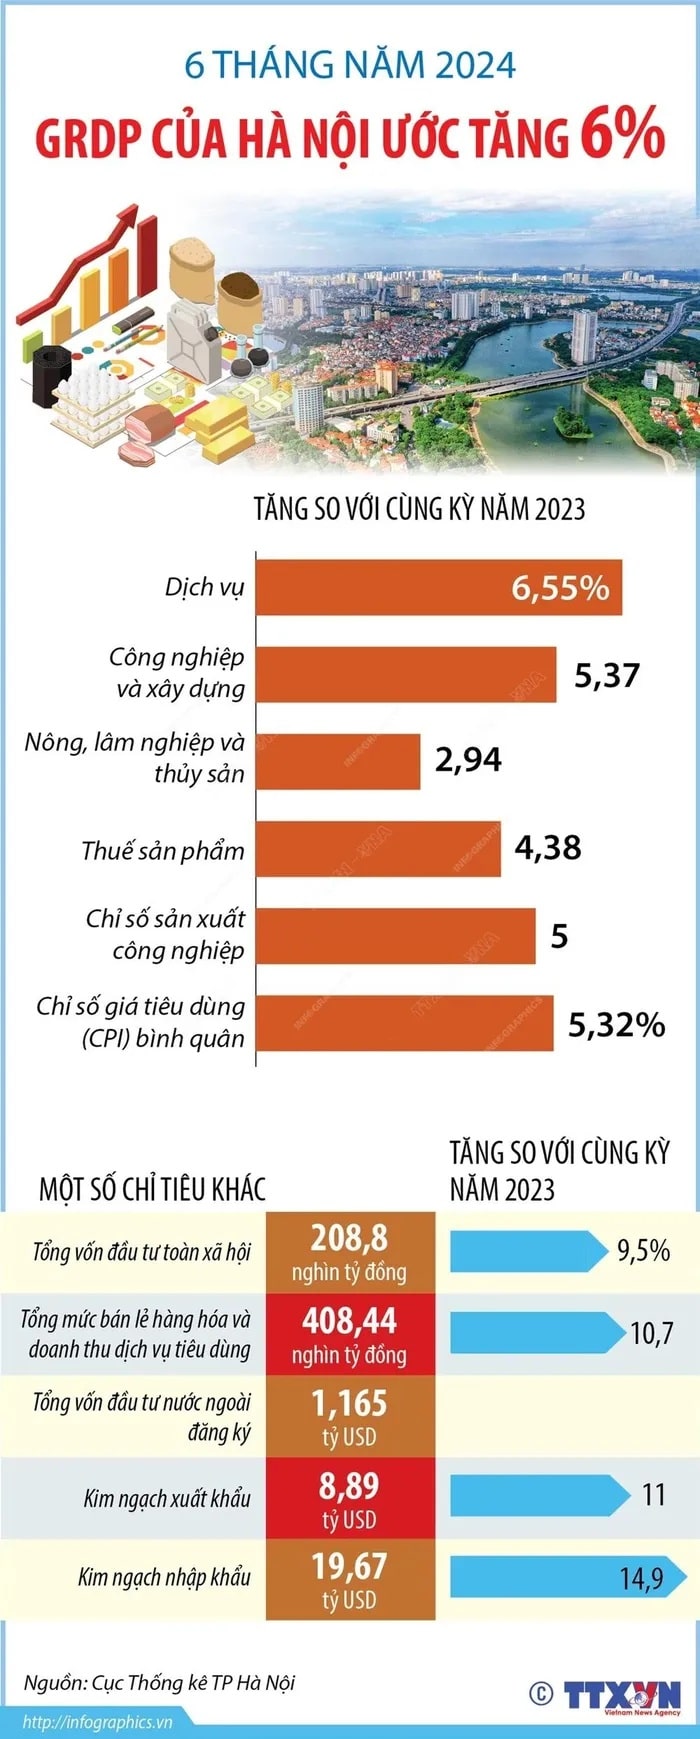 GRDP cua Ha Noi 6 thang nam 2024 min - GRDP của Hà Nội 6 tháng năm 2024 ước tăng 6%